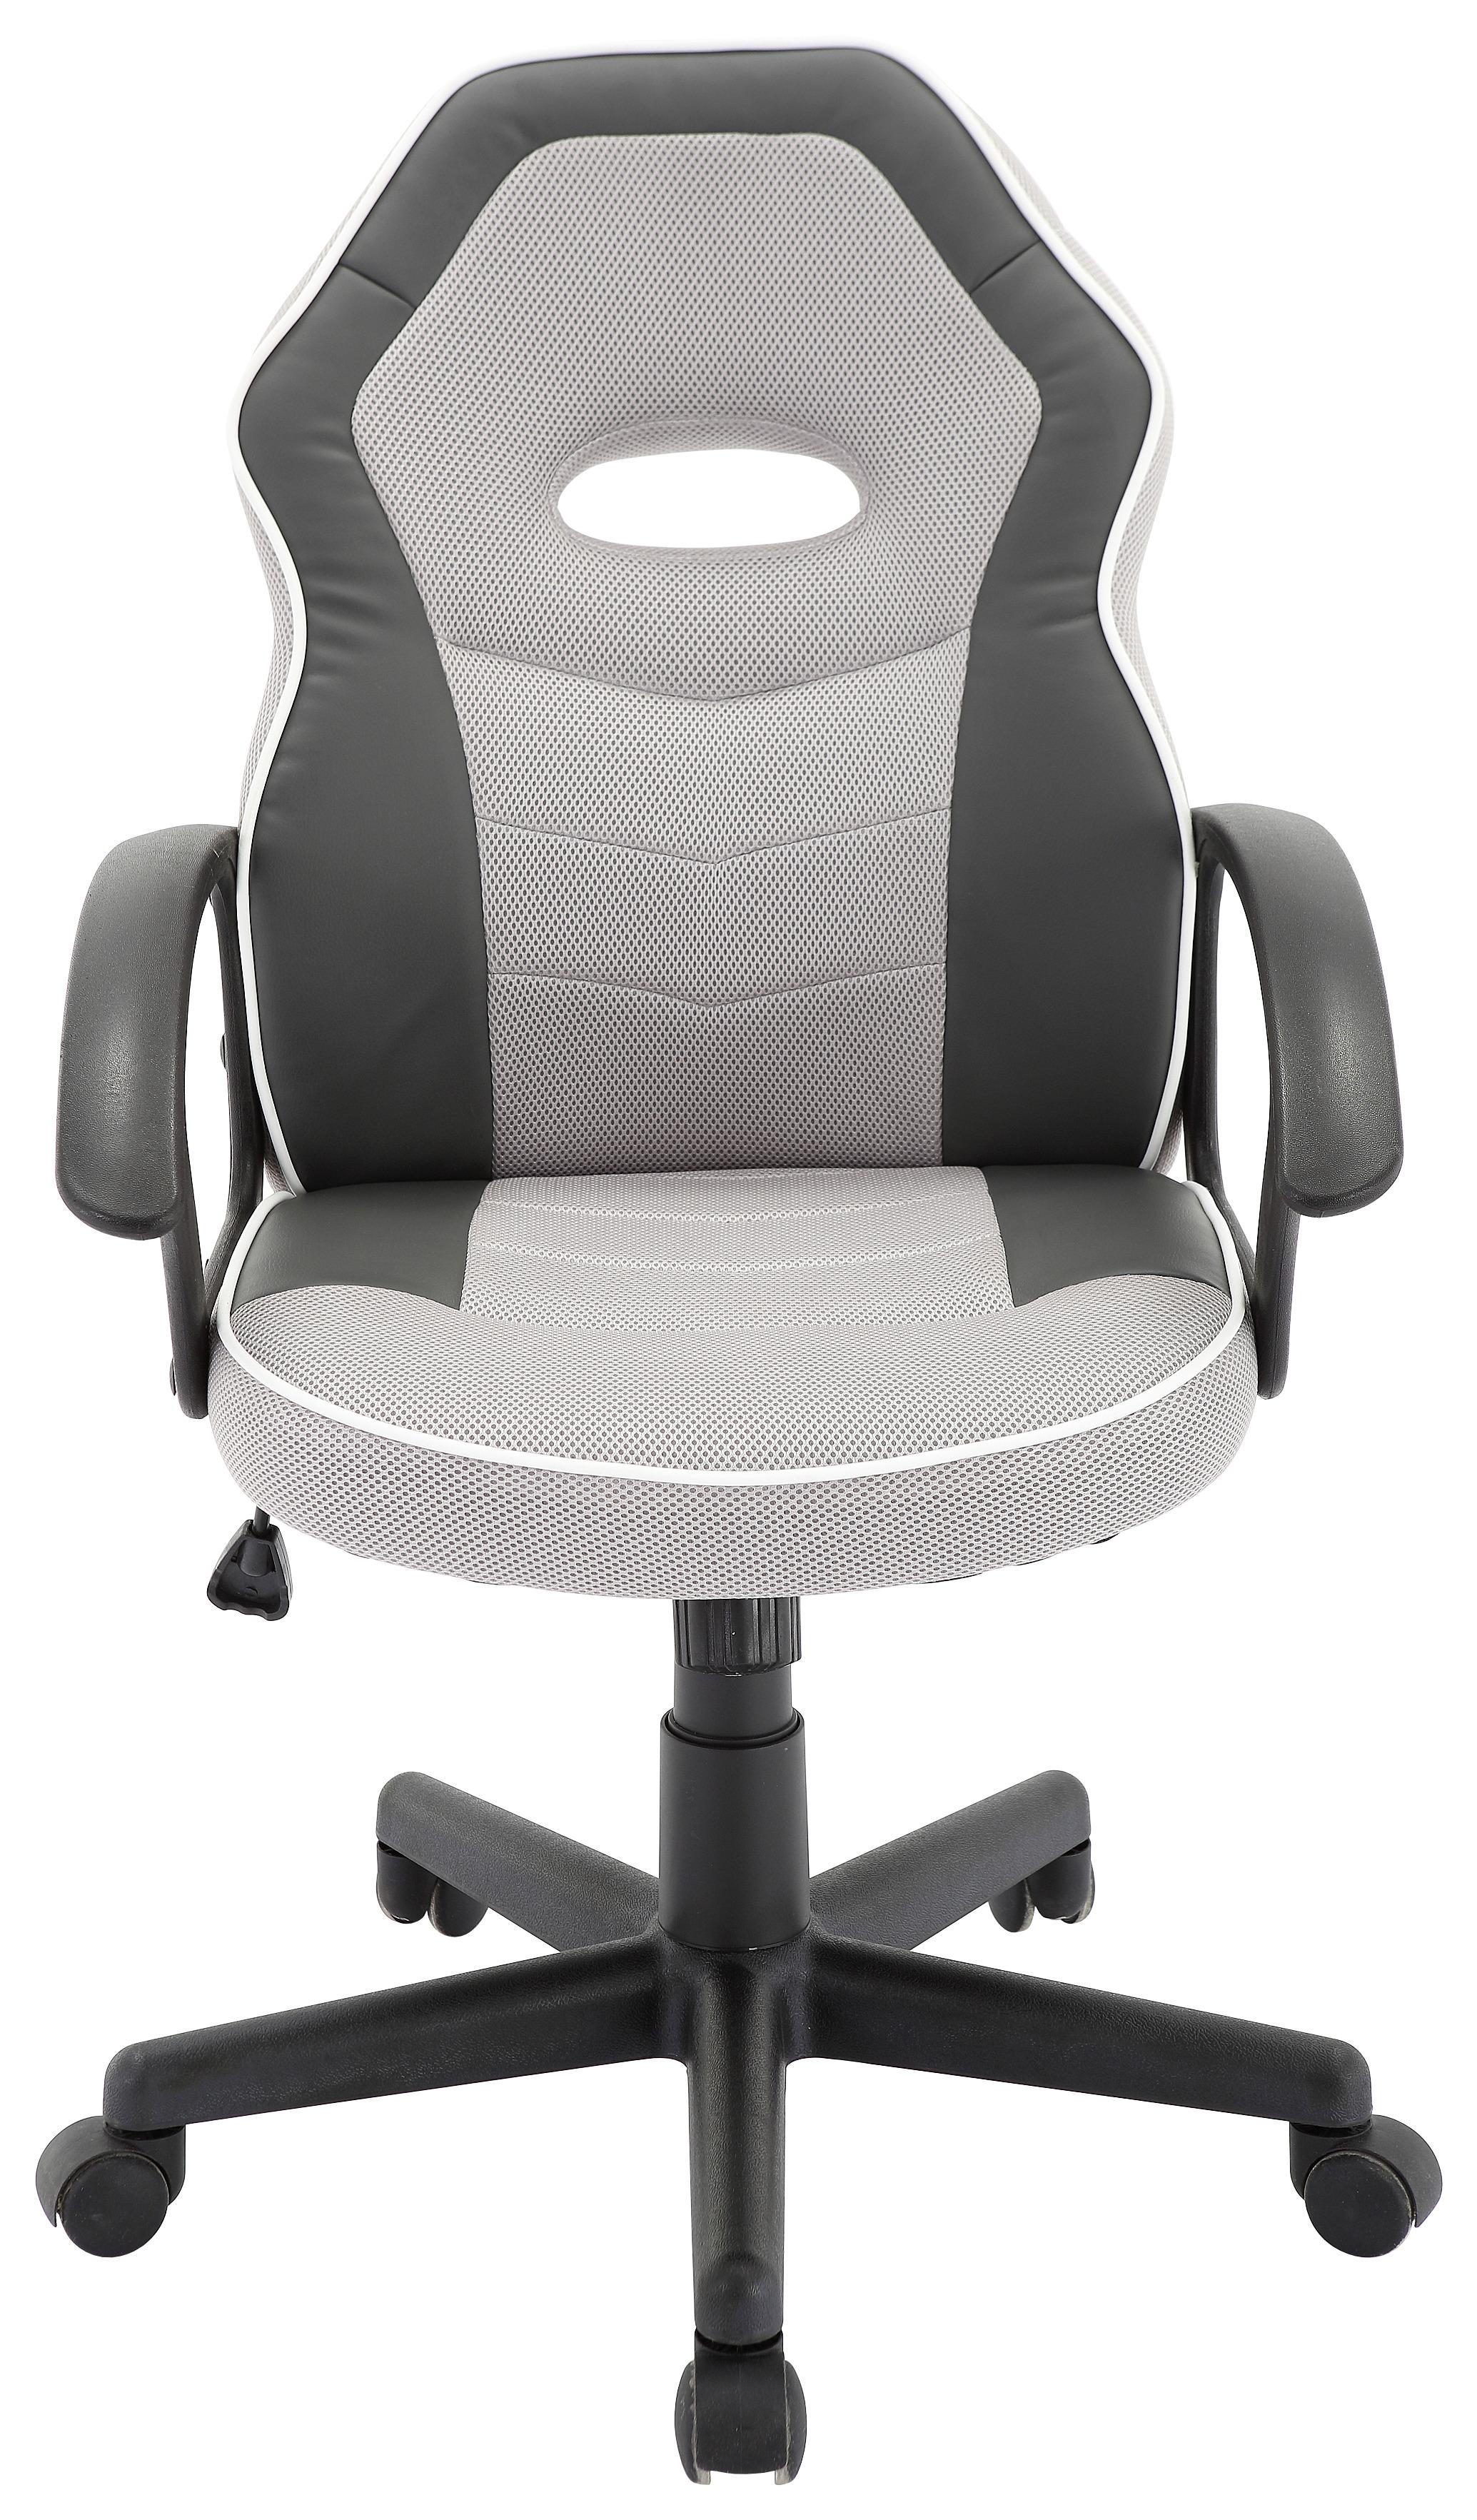 Otočná Židle Rico - šedá/bílá, Moderní, kov/textil (56,5/95-105/61cm) - Modern Living